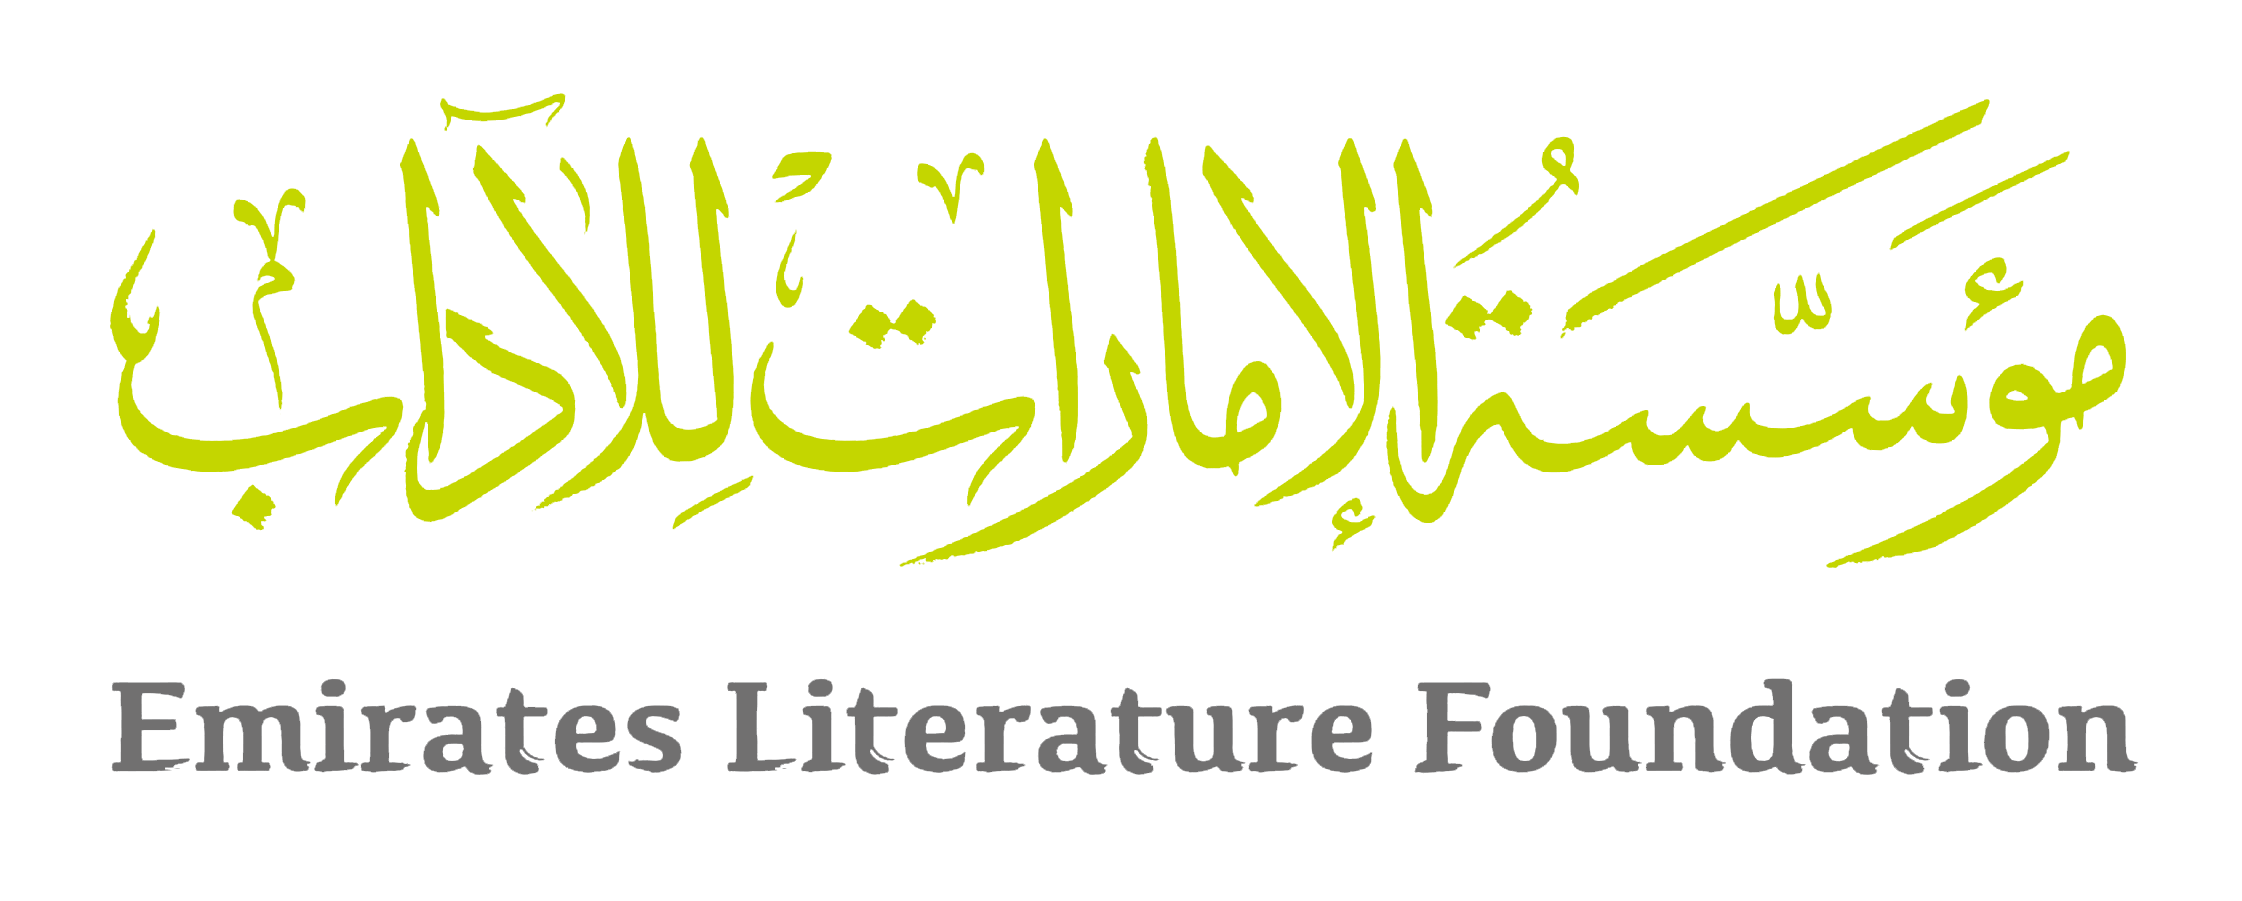 Emirates Literature Foundation